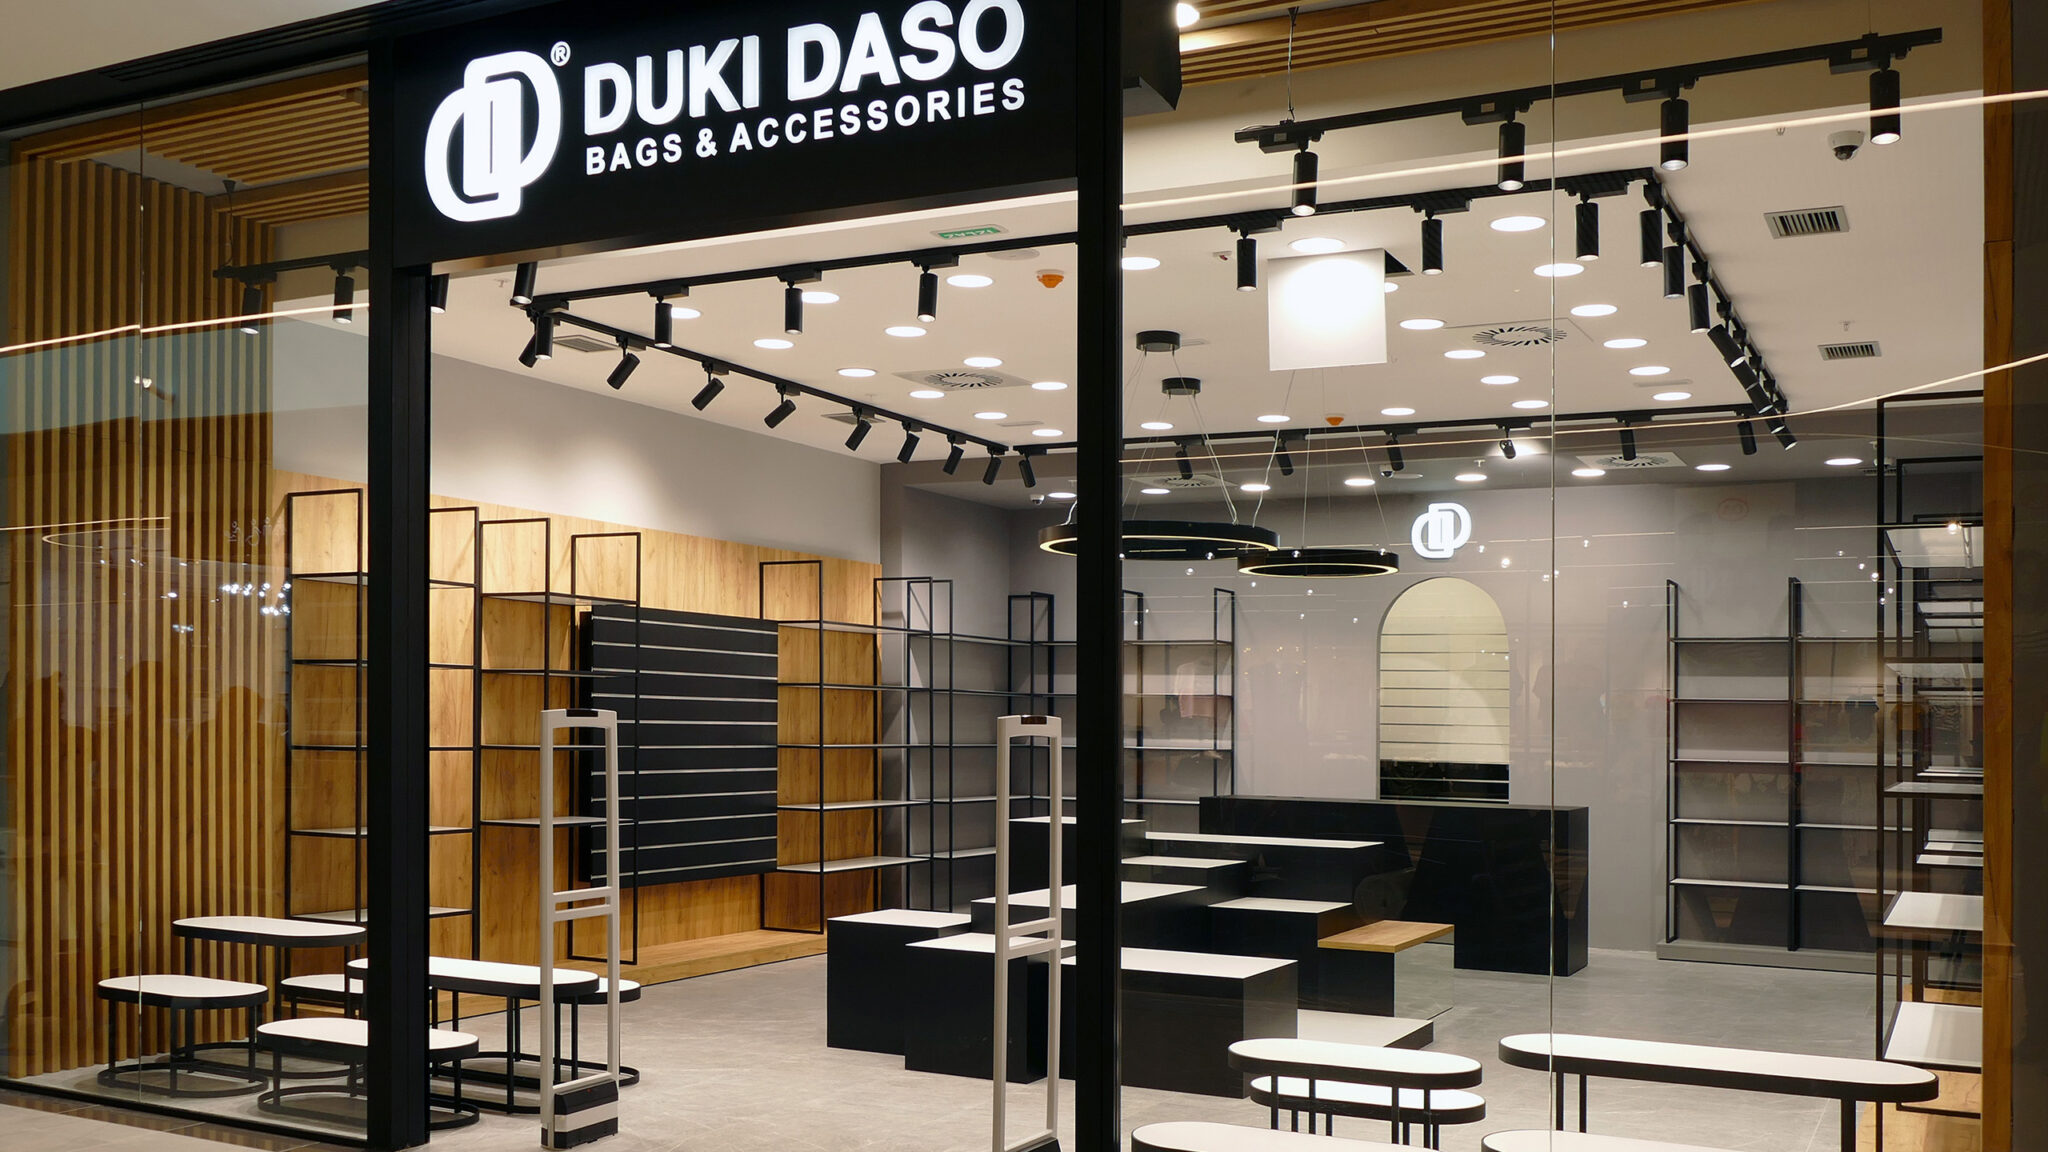 Duki Daso BEO SC store